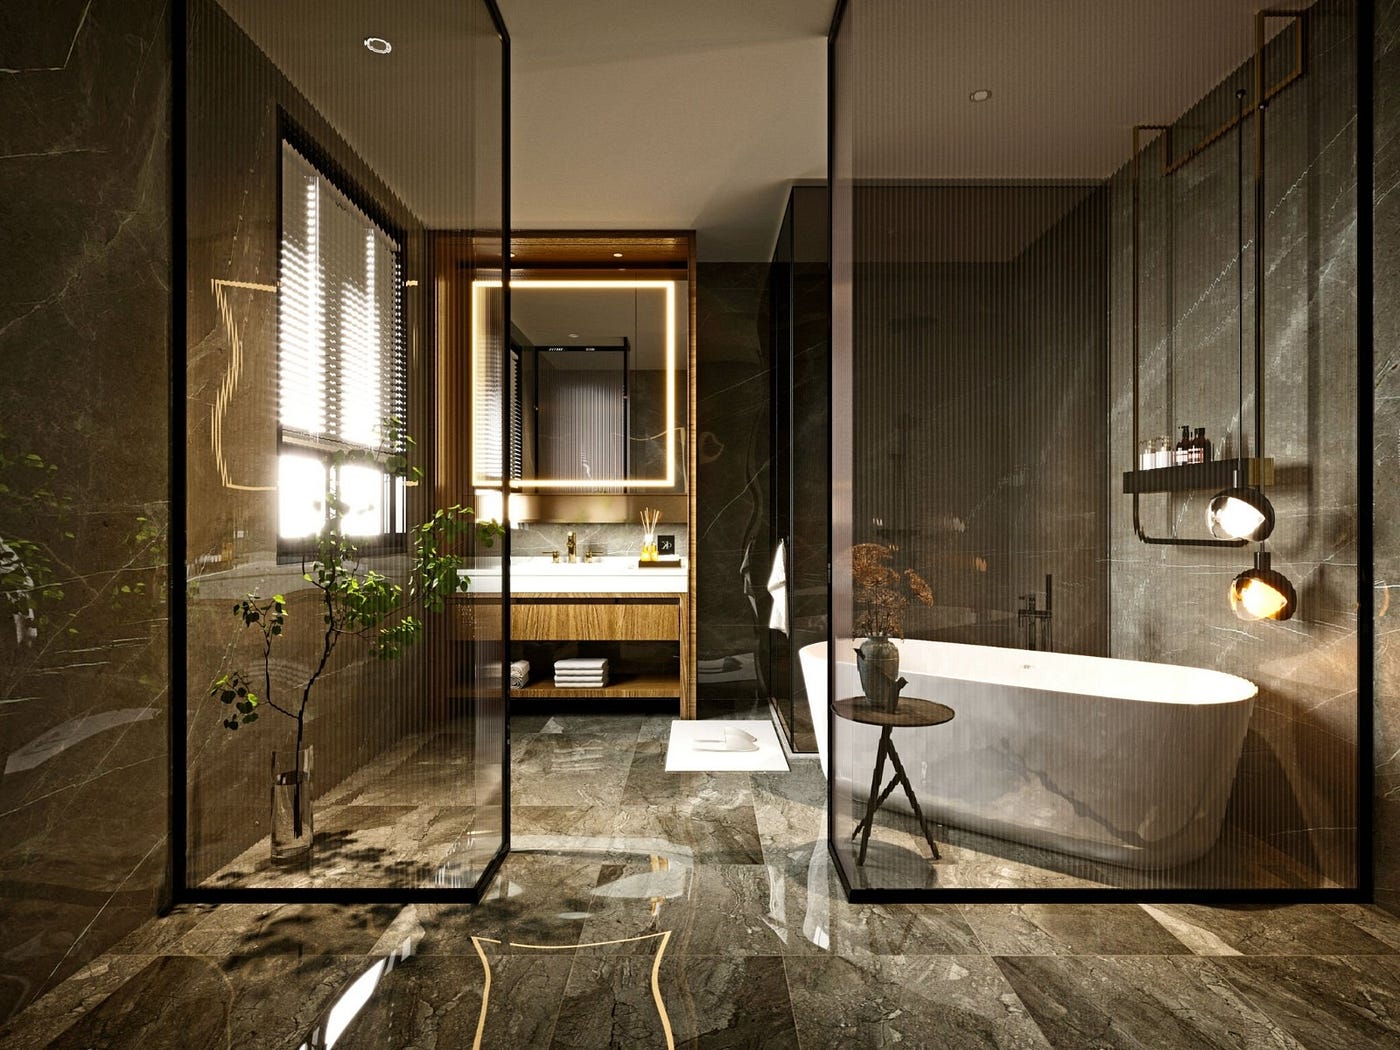 جميع أفكار تصميم الحمام واتجاهاتها مع جروهي | by Highfive bath | Medium